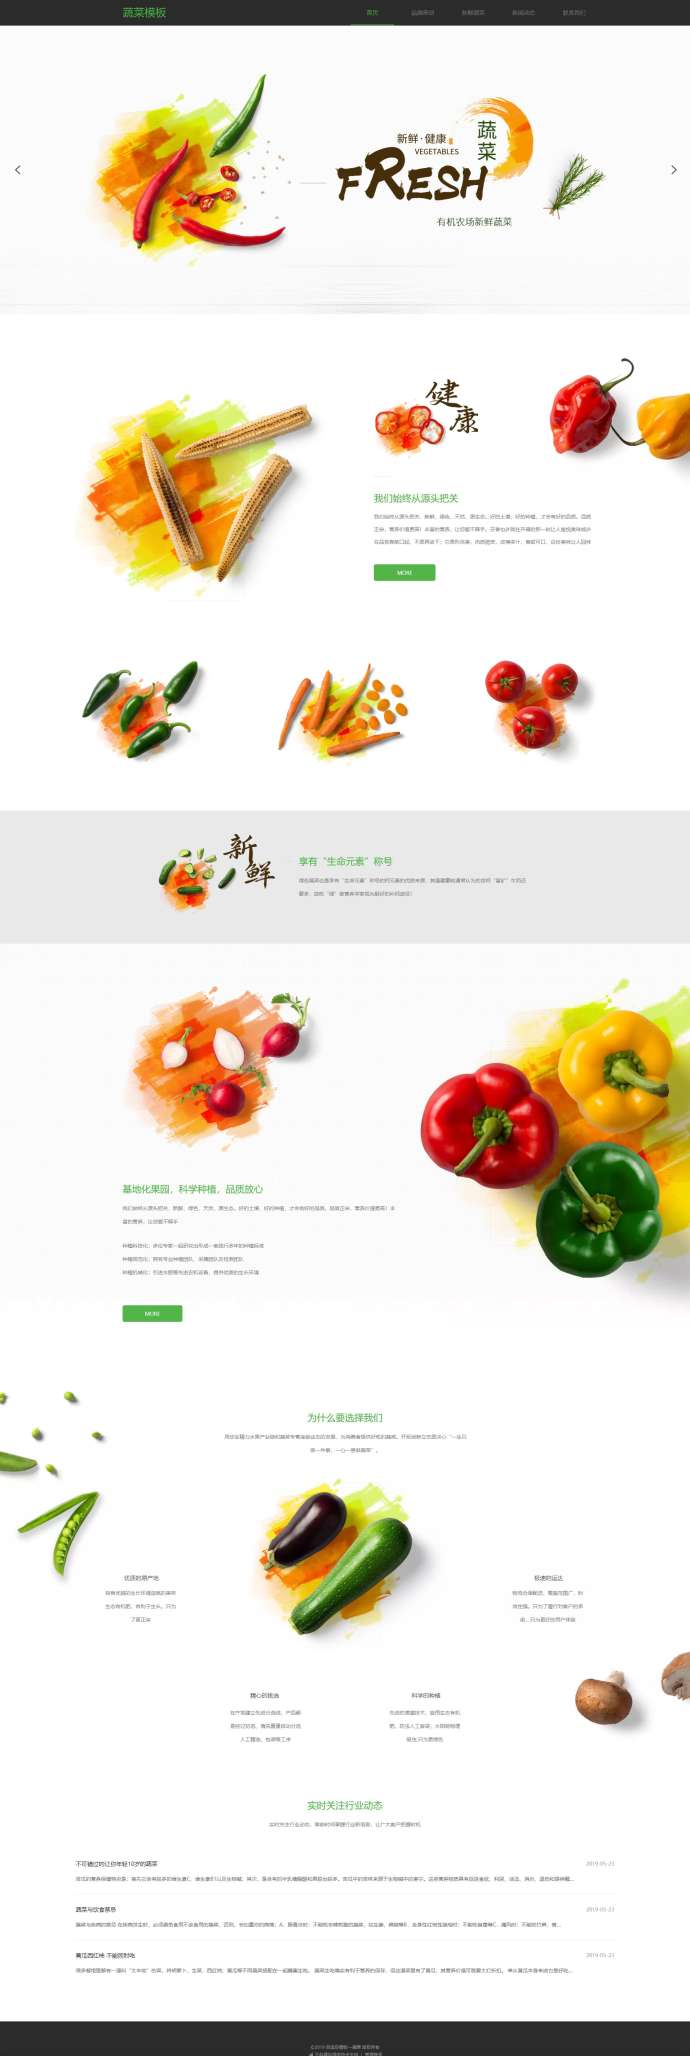 原创蔬菜水果网站模板[演示]